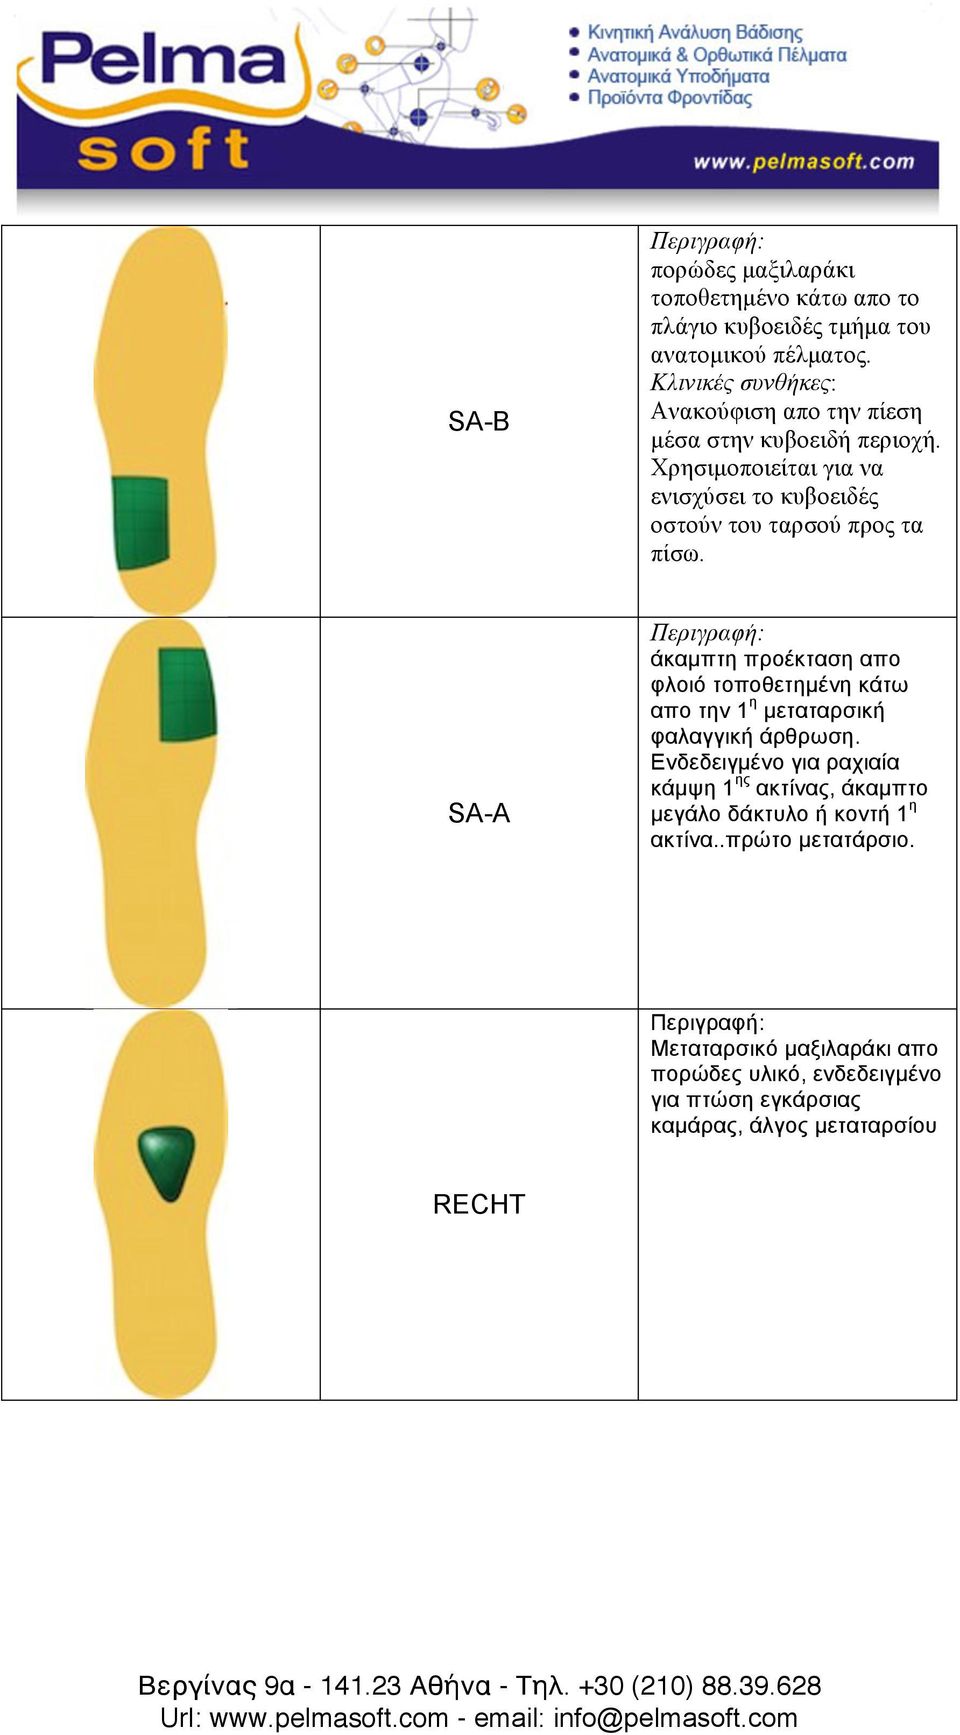 SA-A άκαµπτη προέκταση απο φλοιό τοποθετηµένη κάτω απο την 1 η µεταταρσική φαλαγγική άρθρωση.